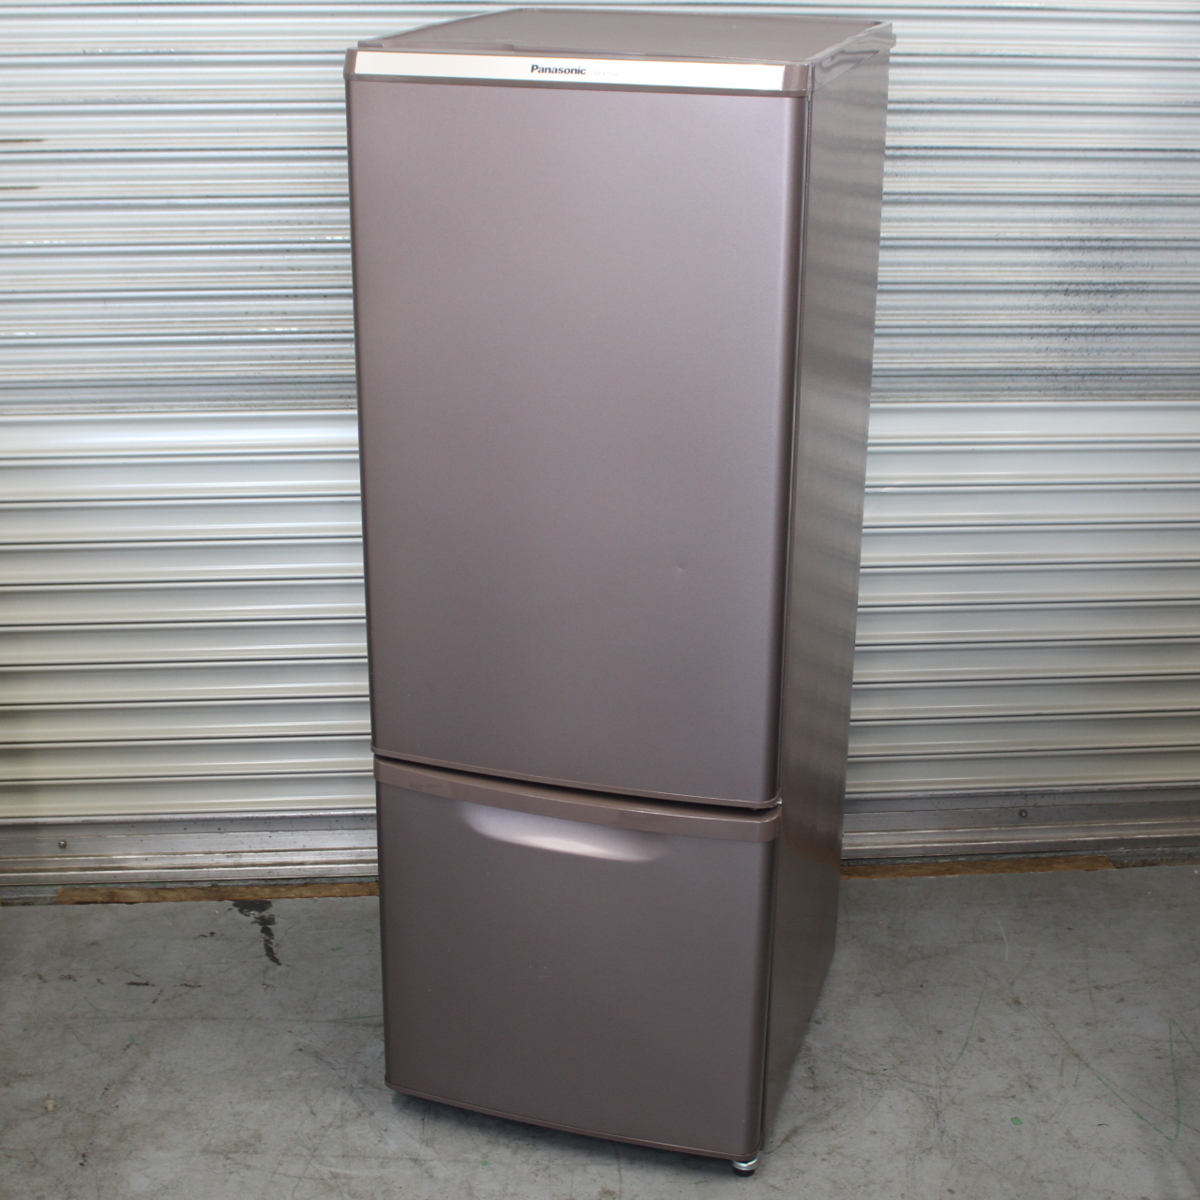 パナソニック ノンフロン冷凍冷蔵庫 NR-B179W-T 2ドア 右開き 168L 2017年製